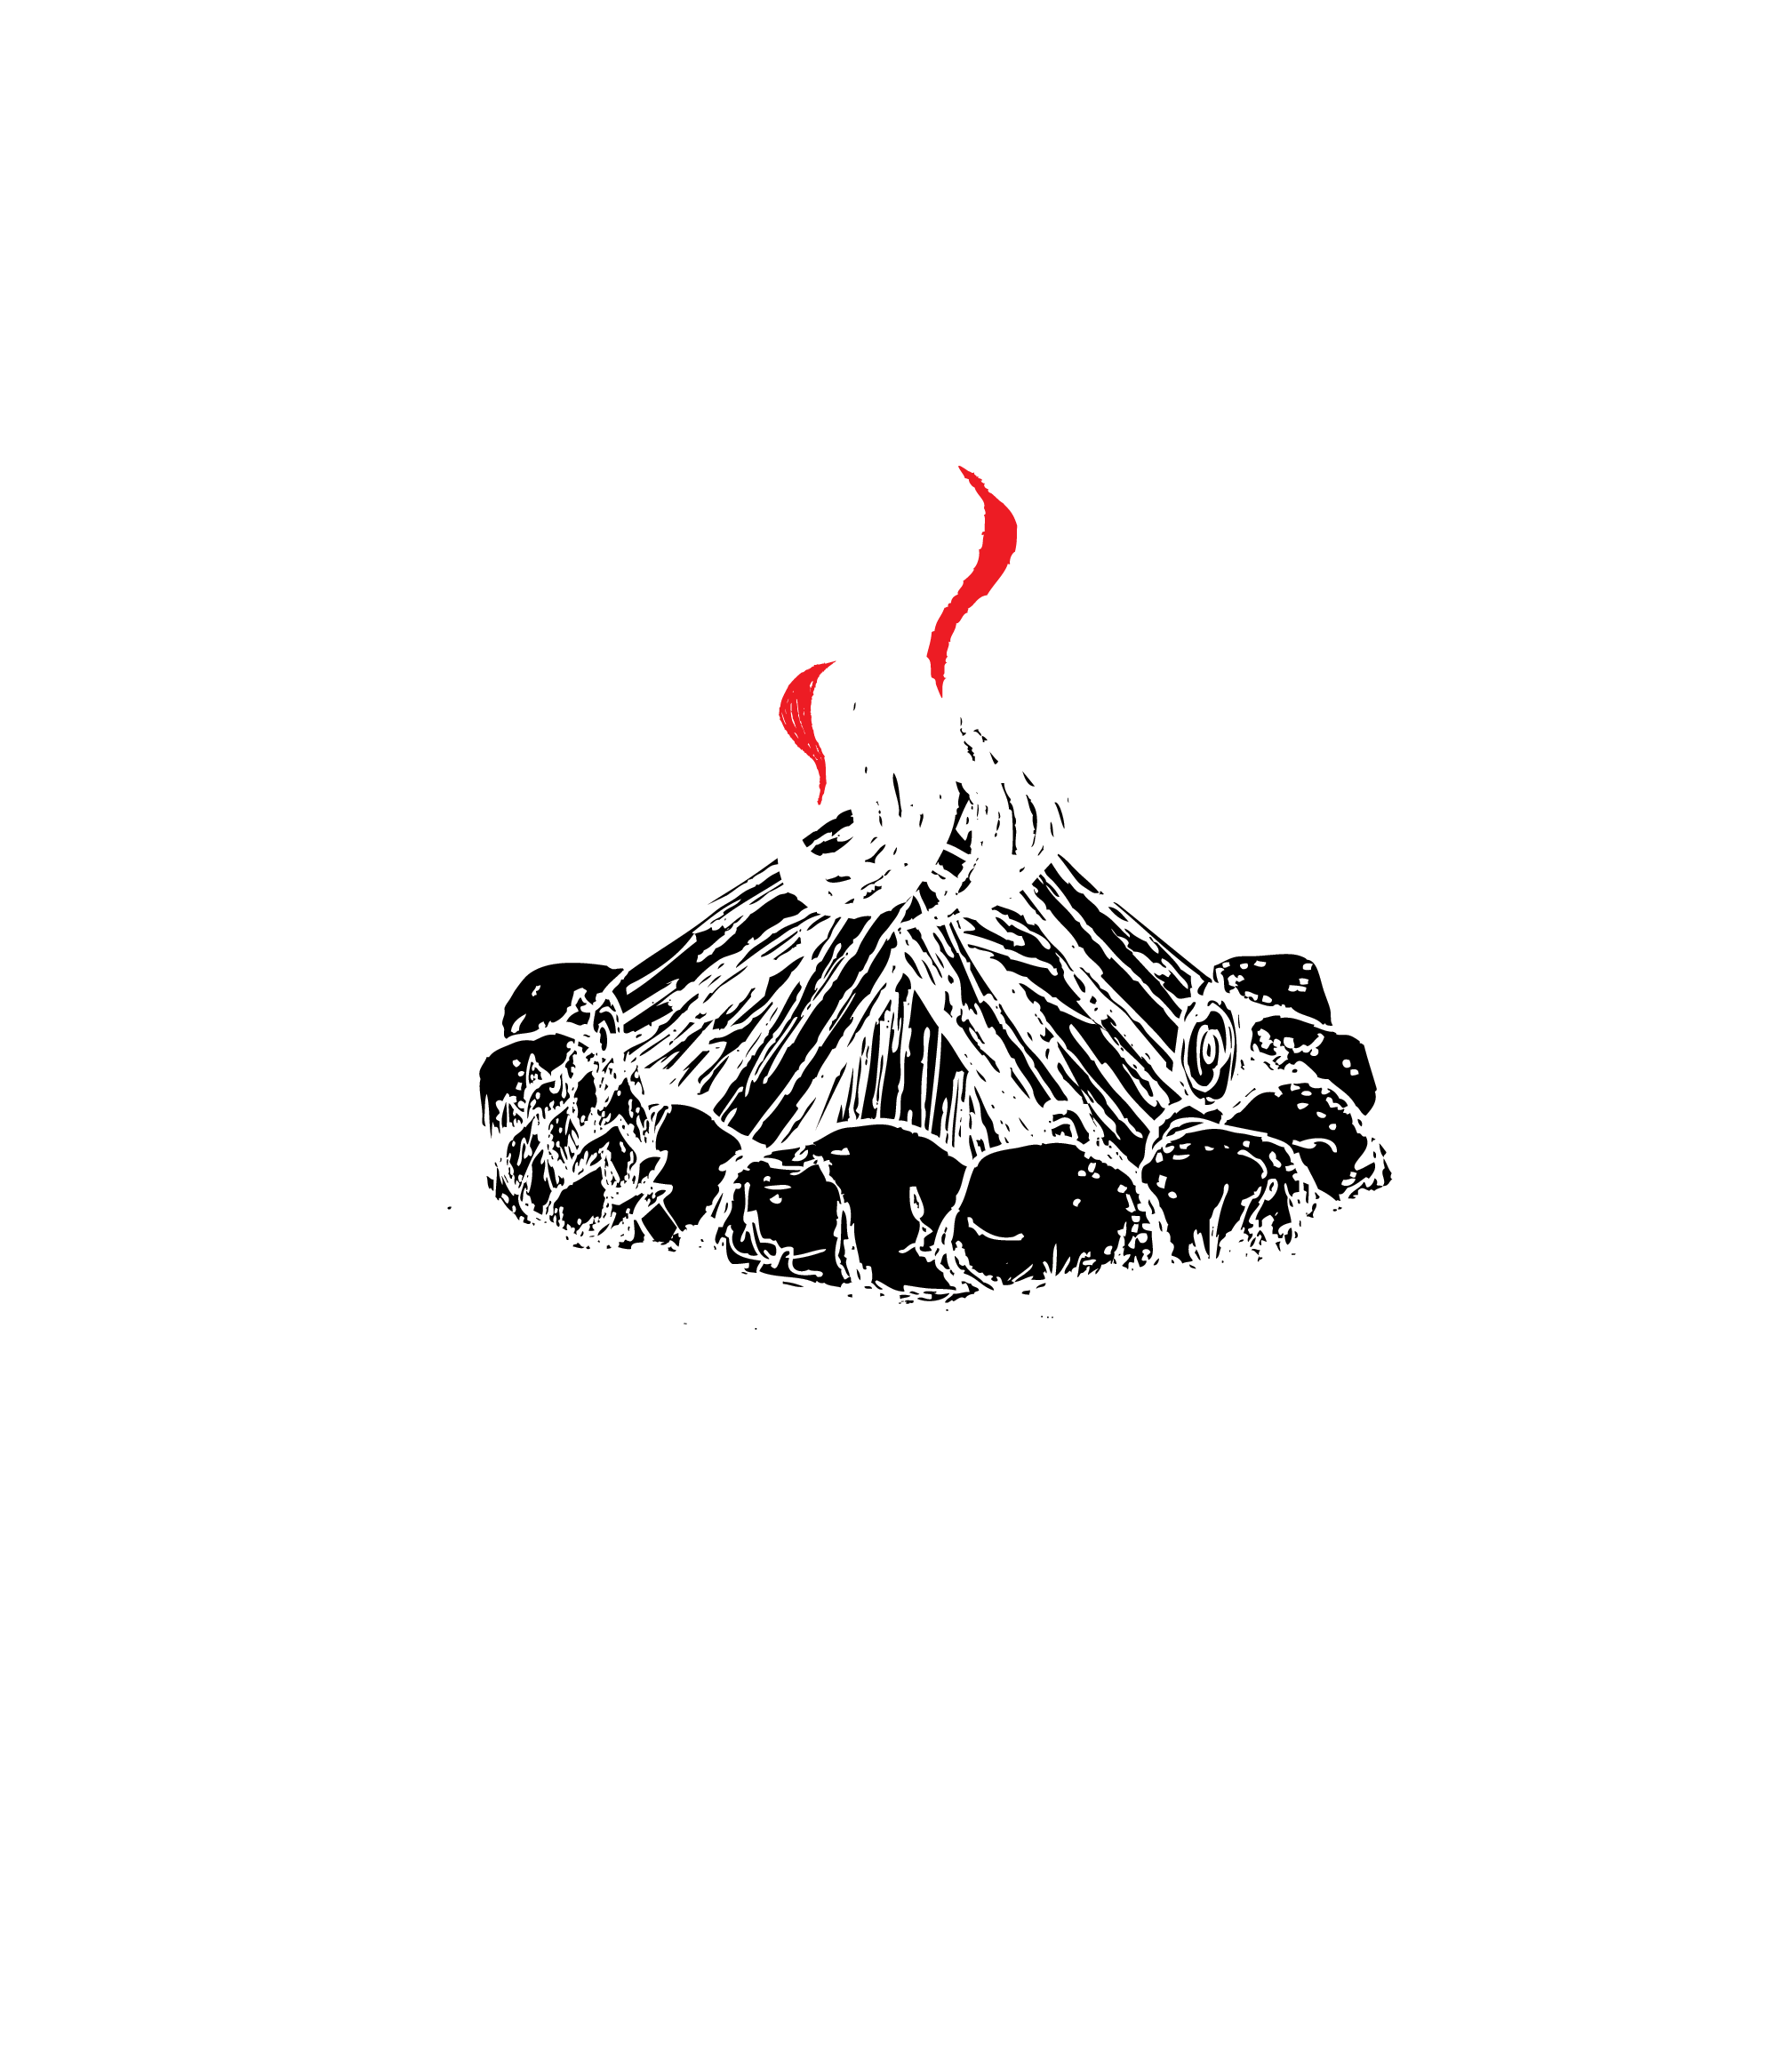 Bond's Brewing